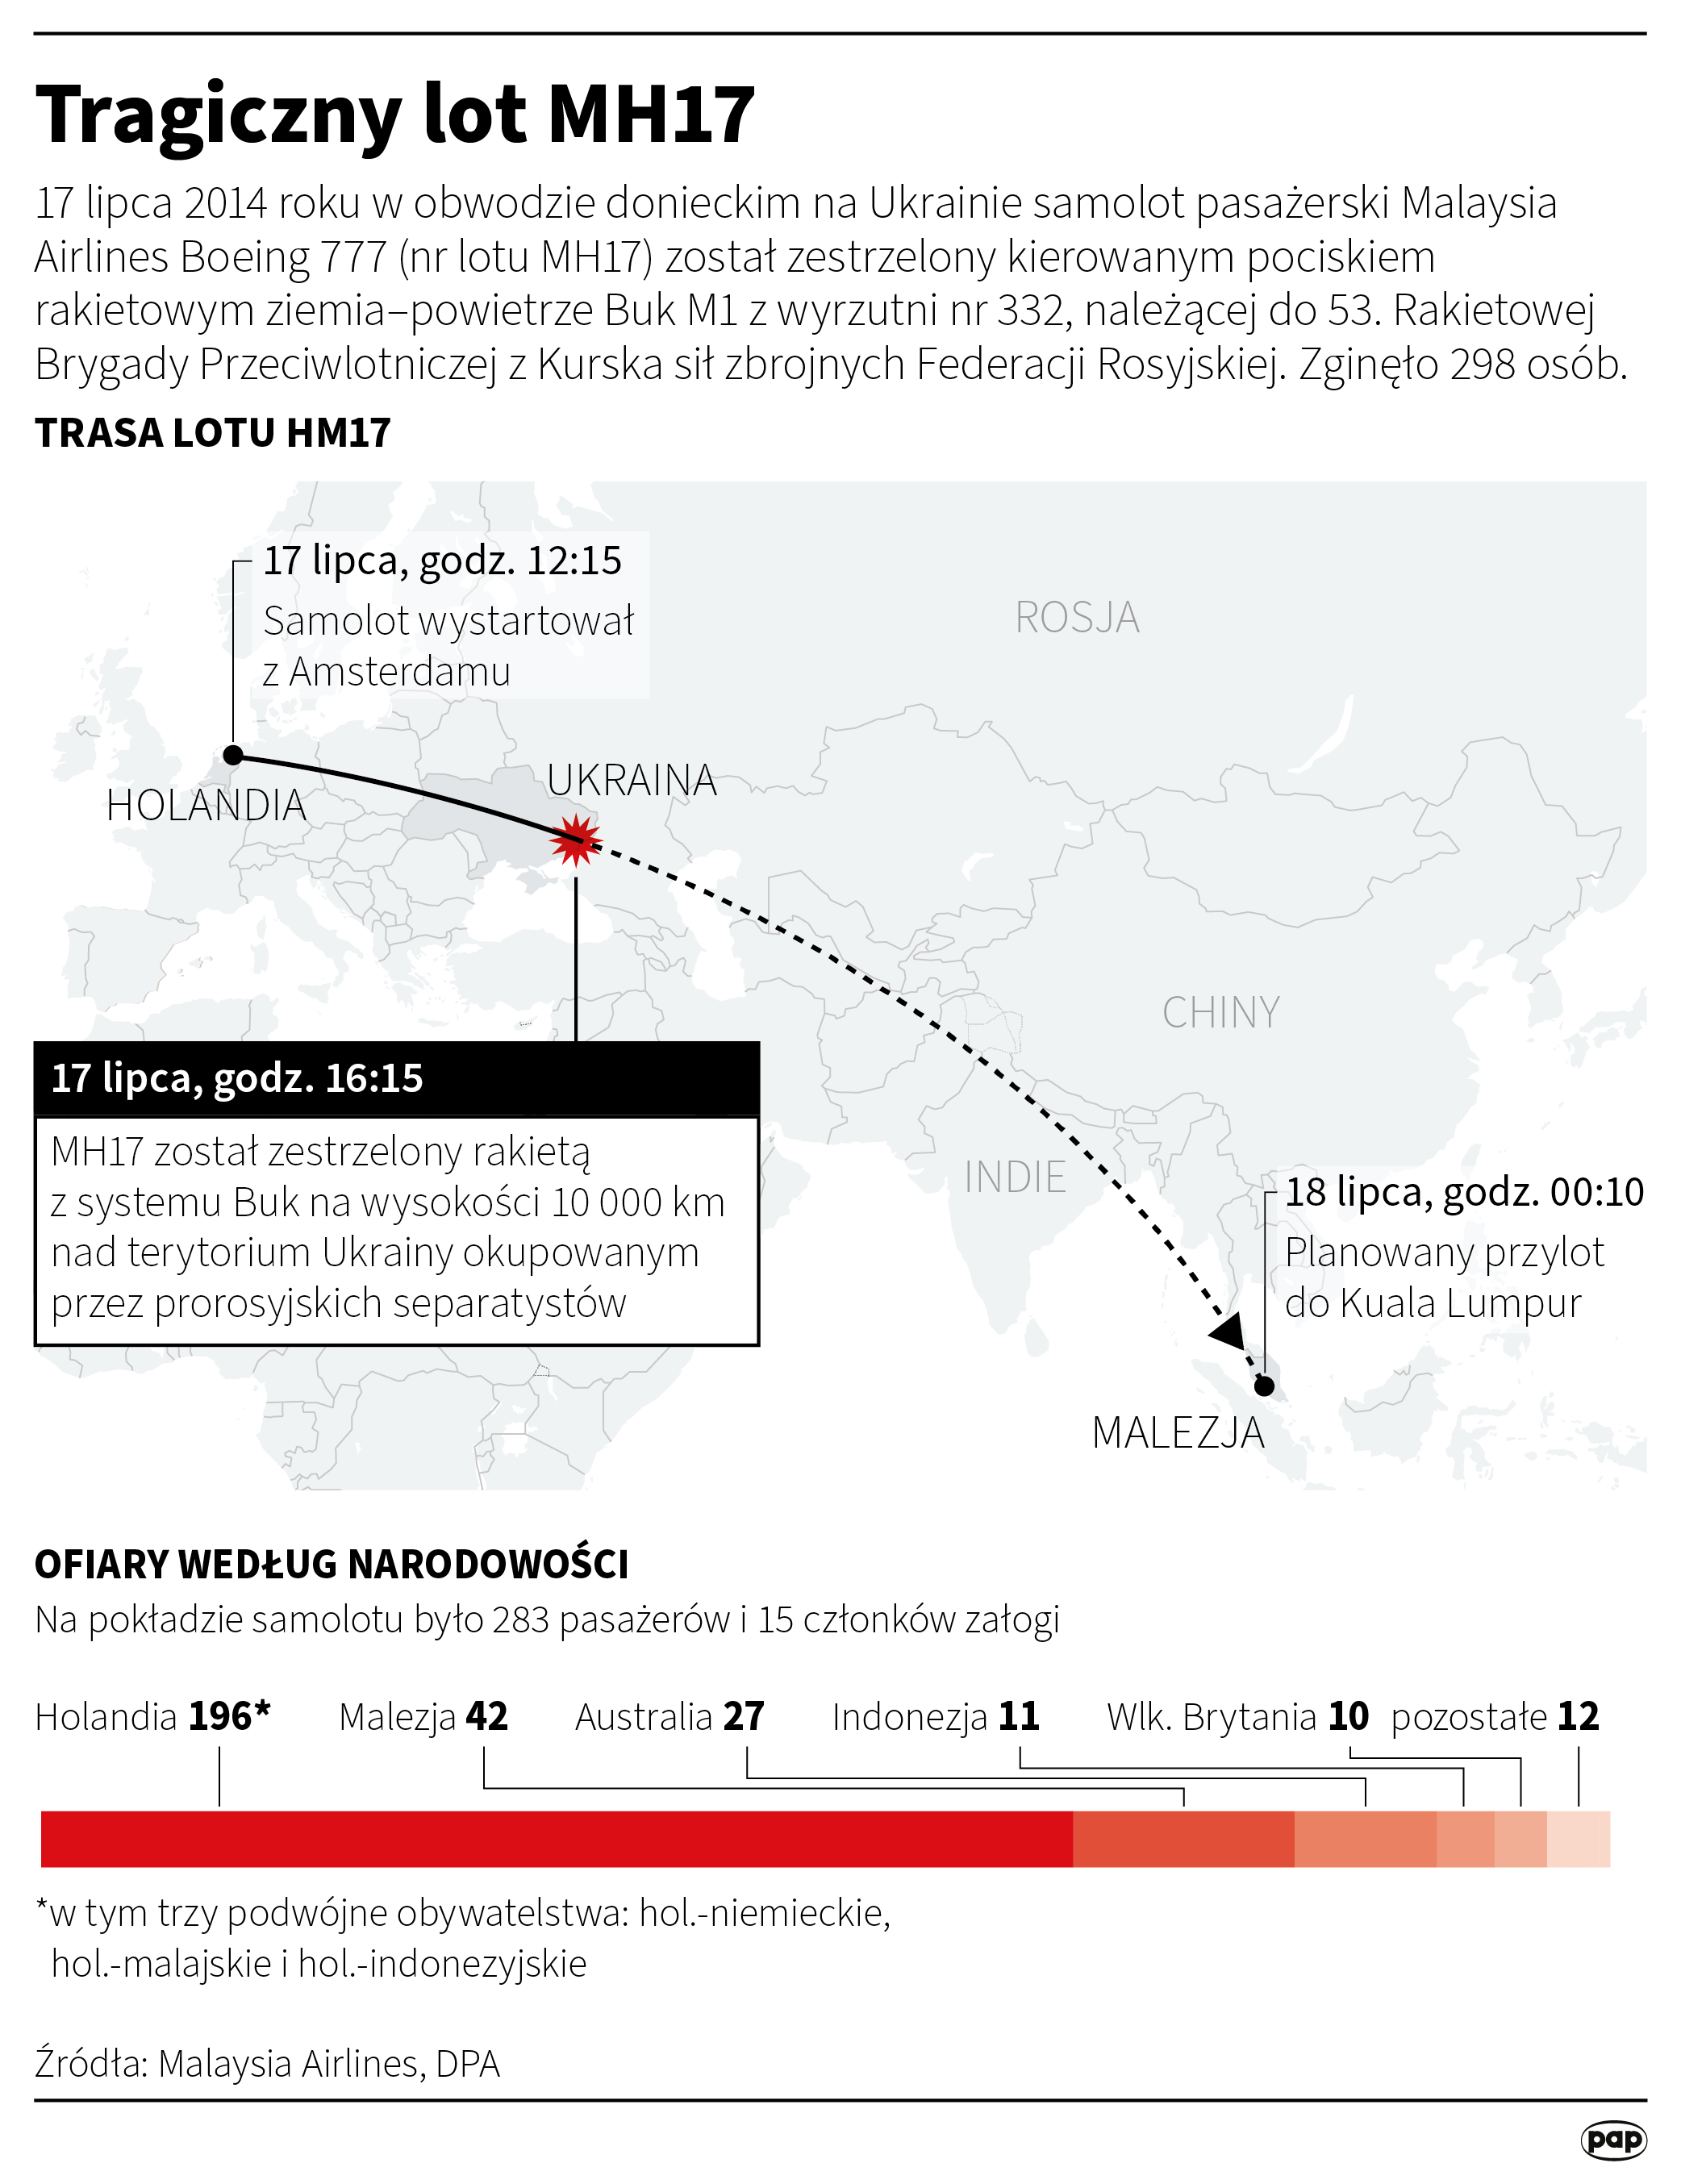 Tragiczny lot MH17, autorzy: PAP/Maciej Zieliński, Maria Samczuk